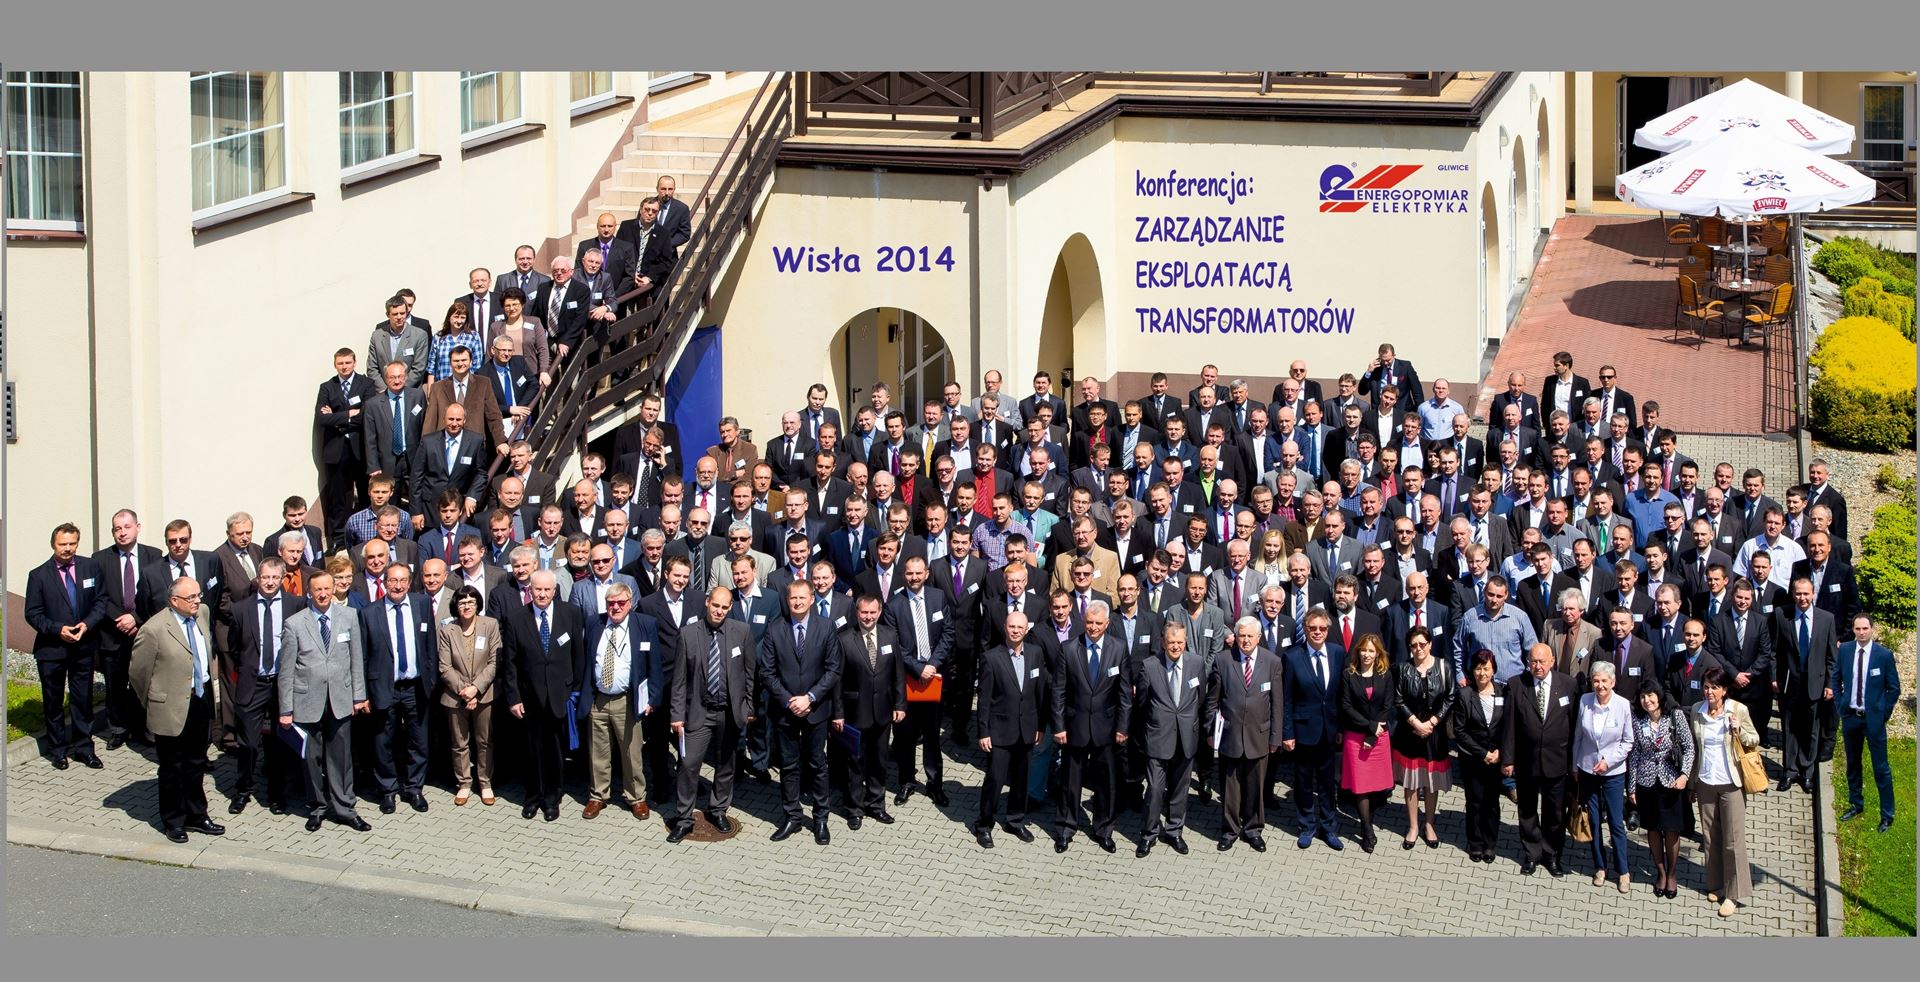 Zarządzanie Eksploatacją Transformatorów – Wisła 2014